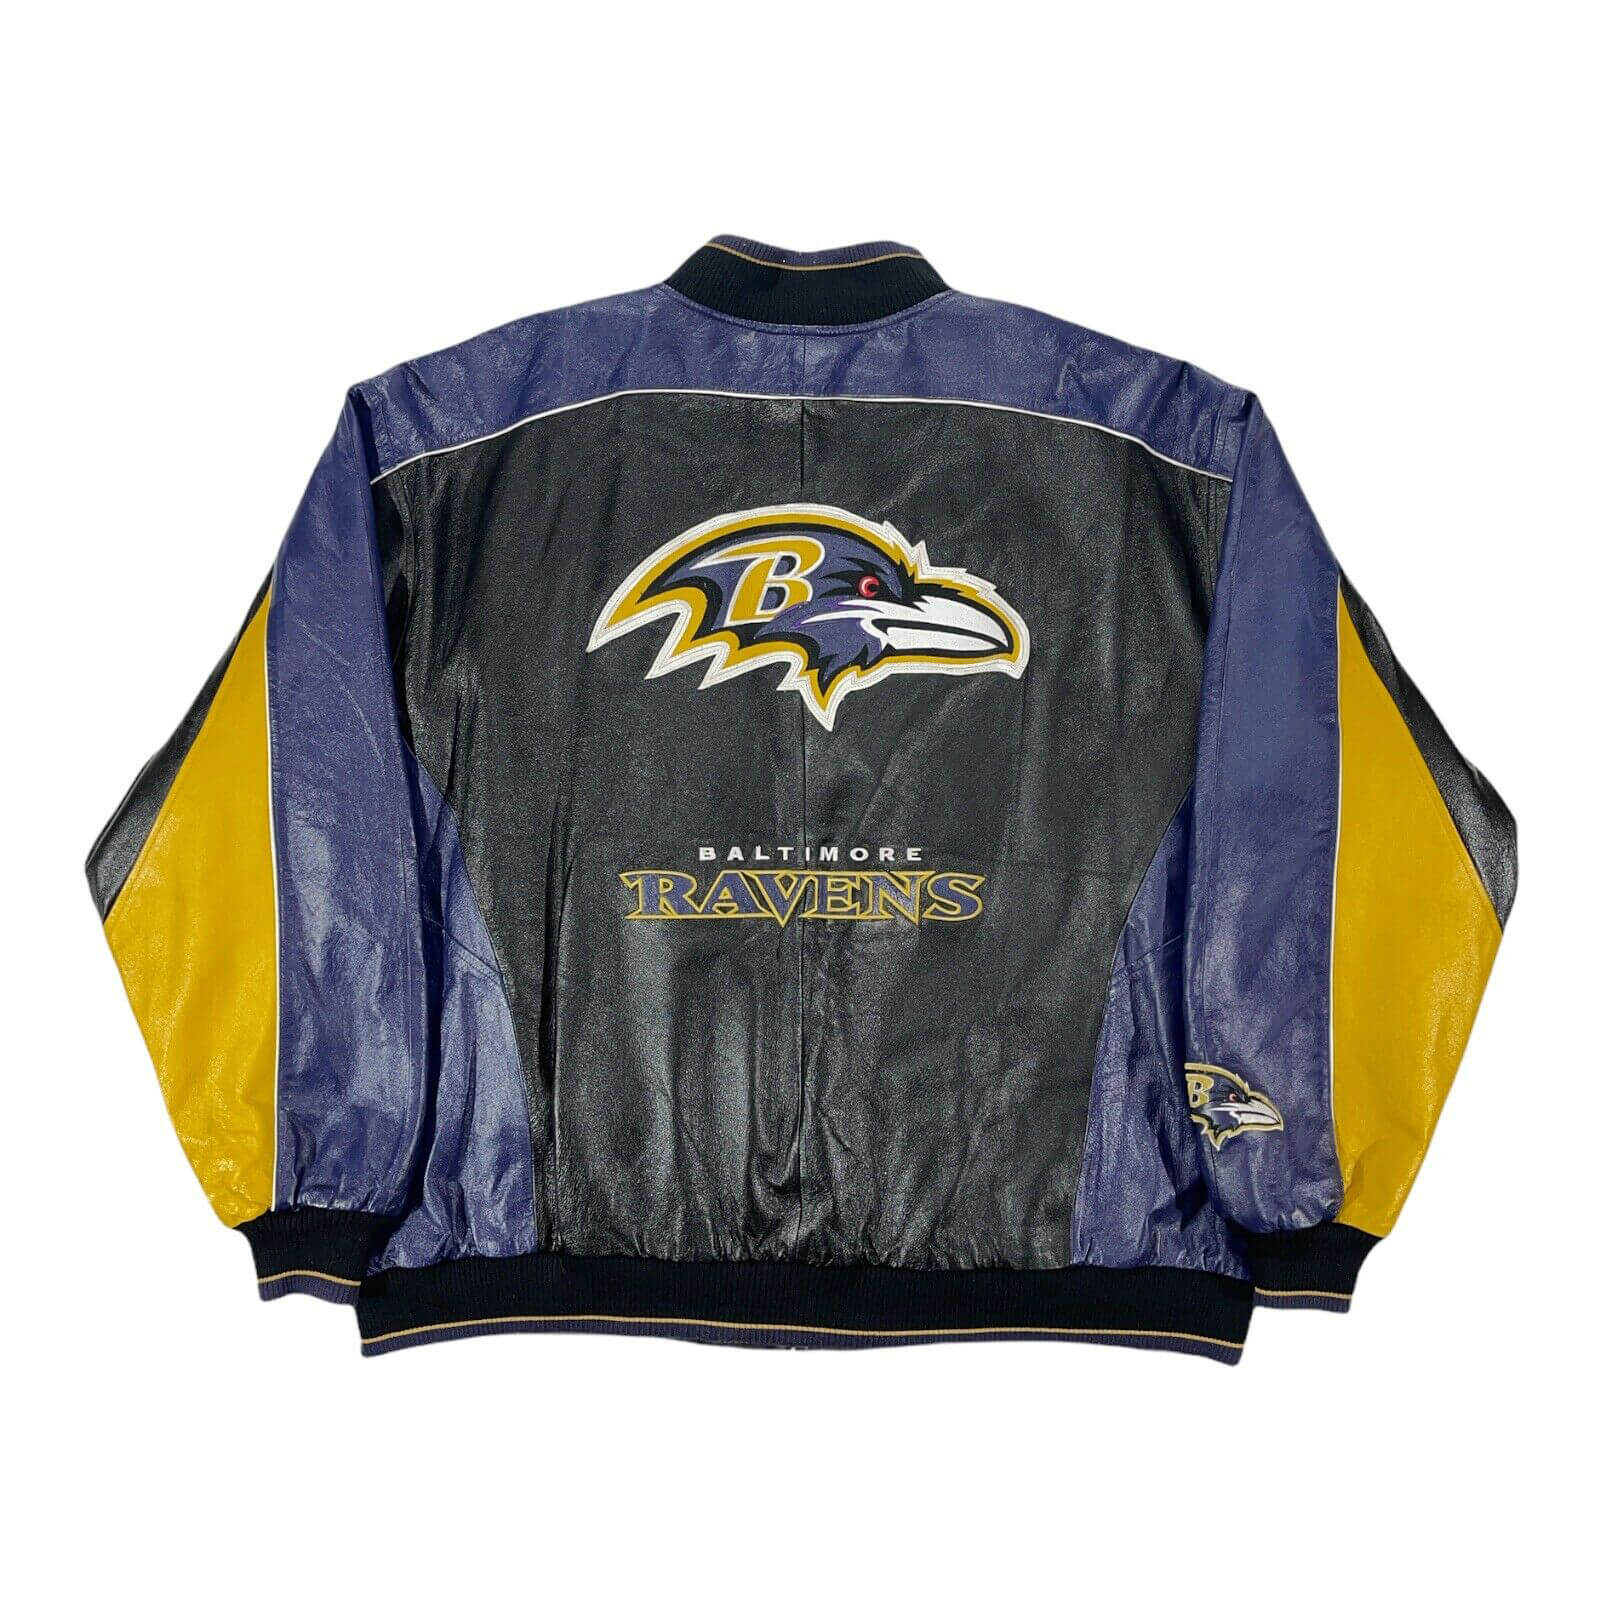 Vintage Baltimore Ravens NFL Tricolor Leather Jacket - Maker of Jacket